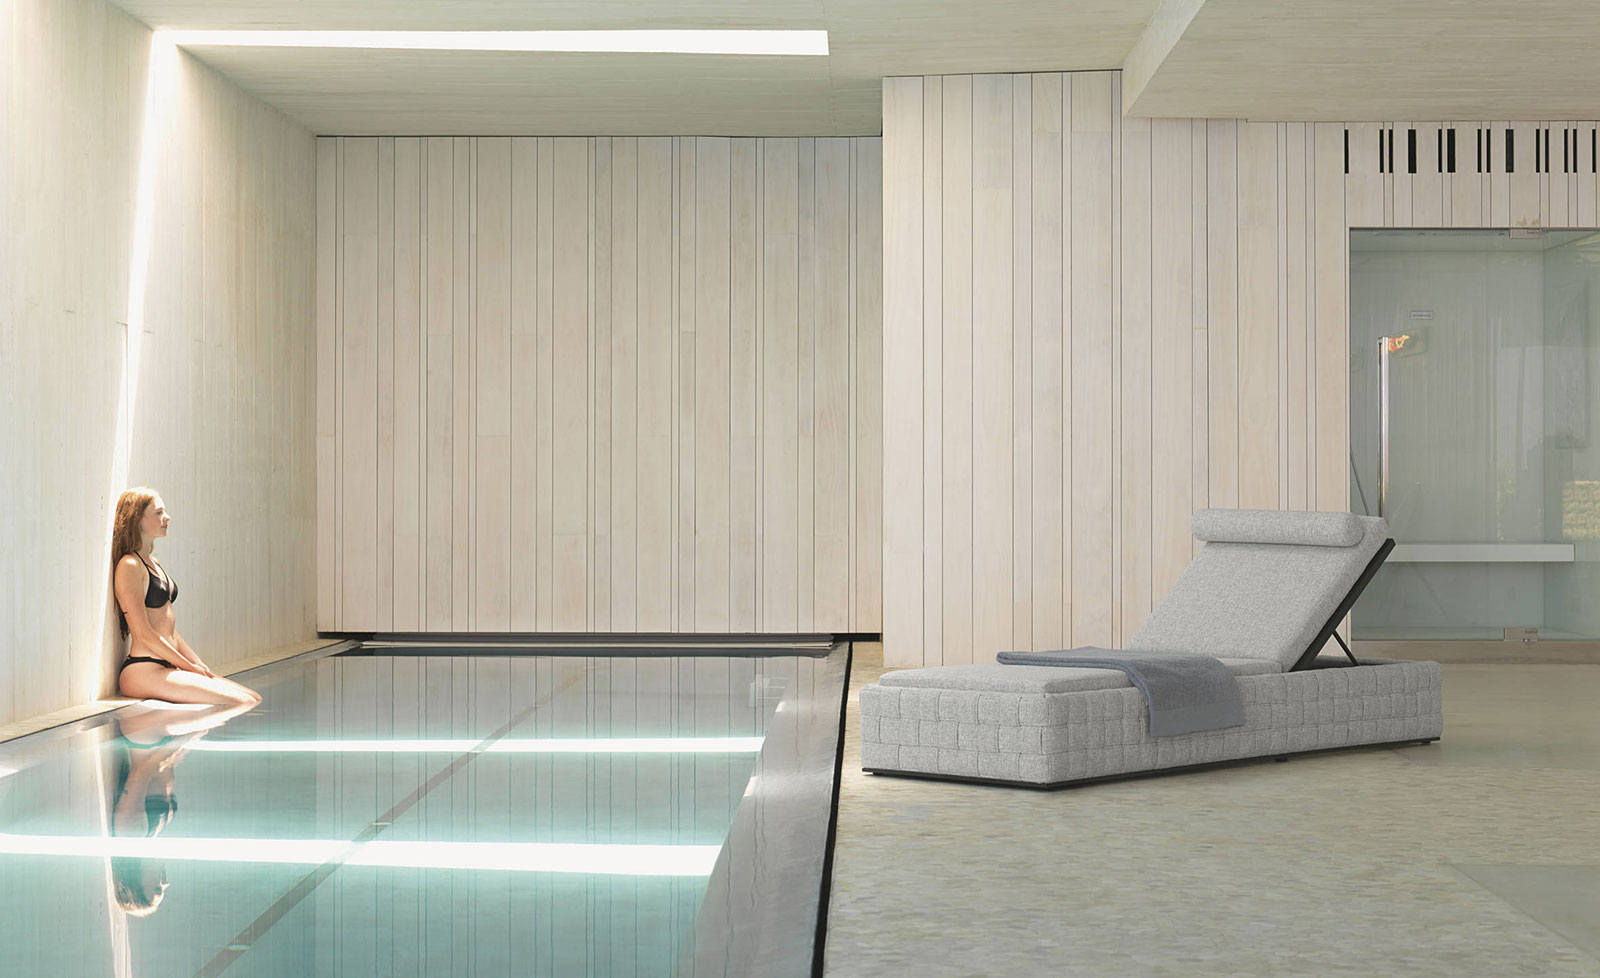 Design de Roberto Serio. Transat en aluminium pour villas, hotels et yachts. Parfait dans un jardin au bord d'une piscine. Vente en ligne livraison gratuite.